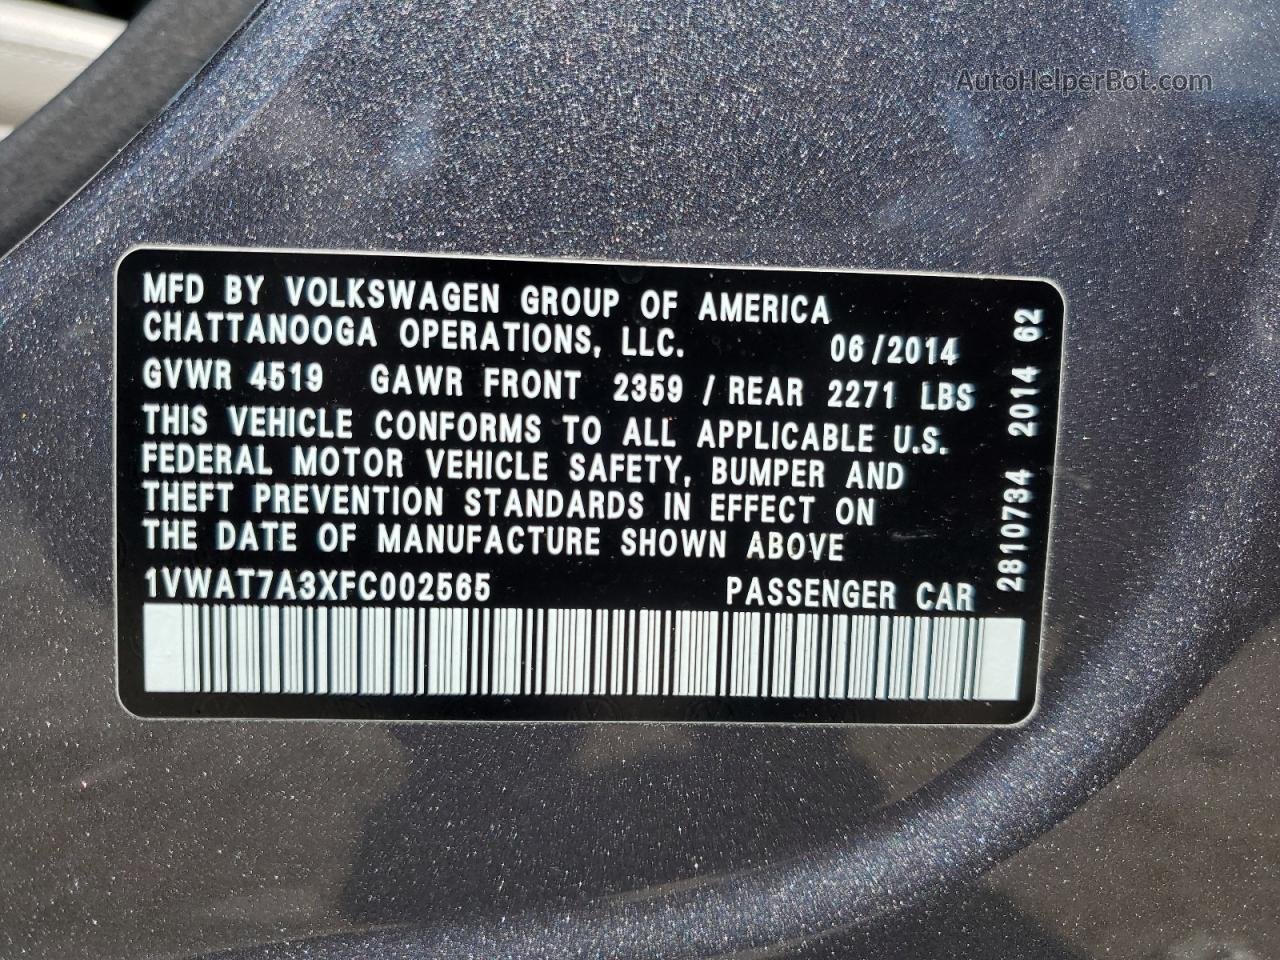 2015 Volkswagen Passat S Gray vin: 1VWAT7A3XFC002565